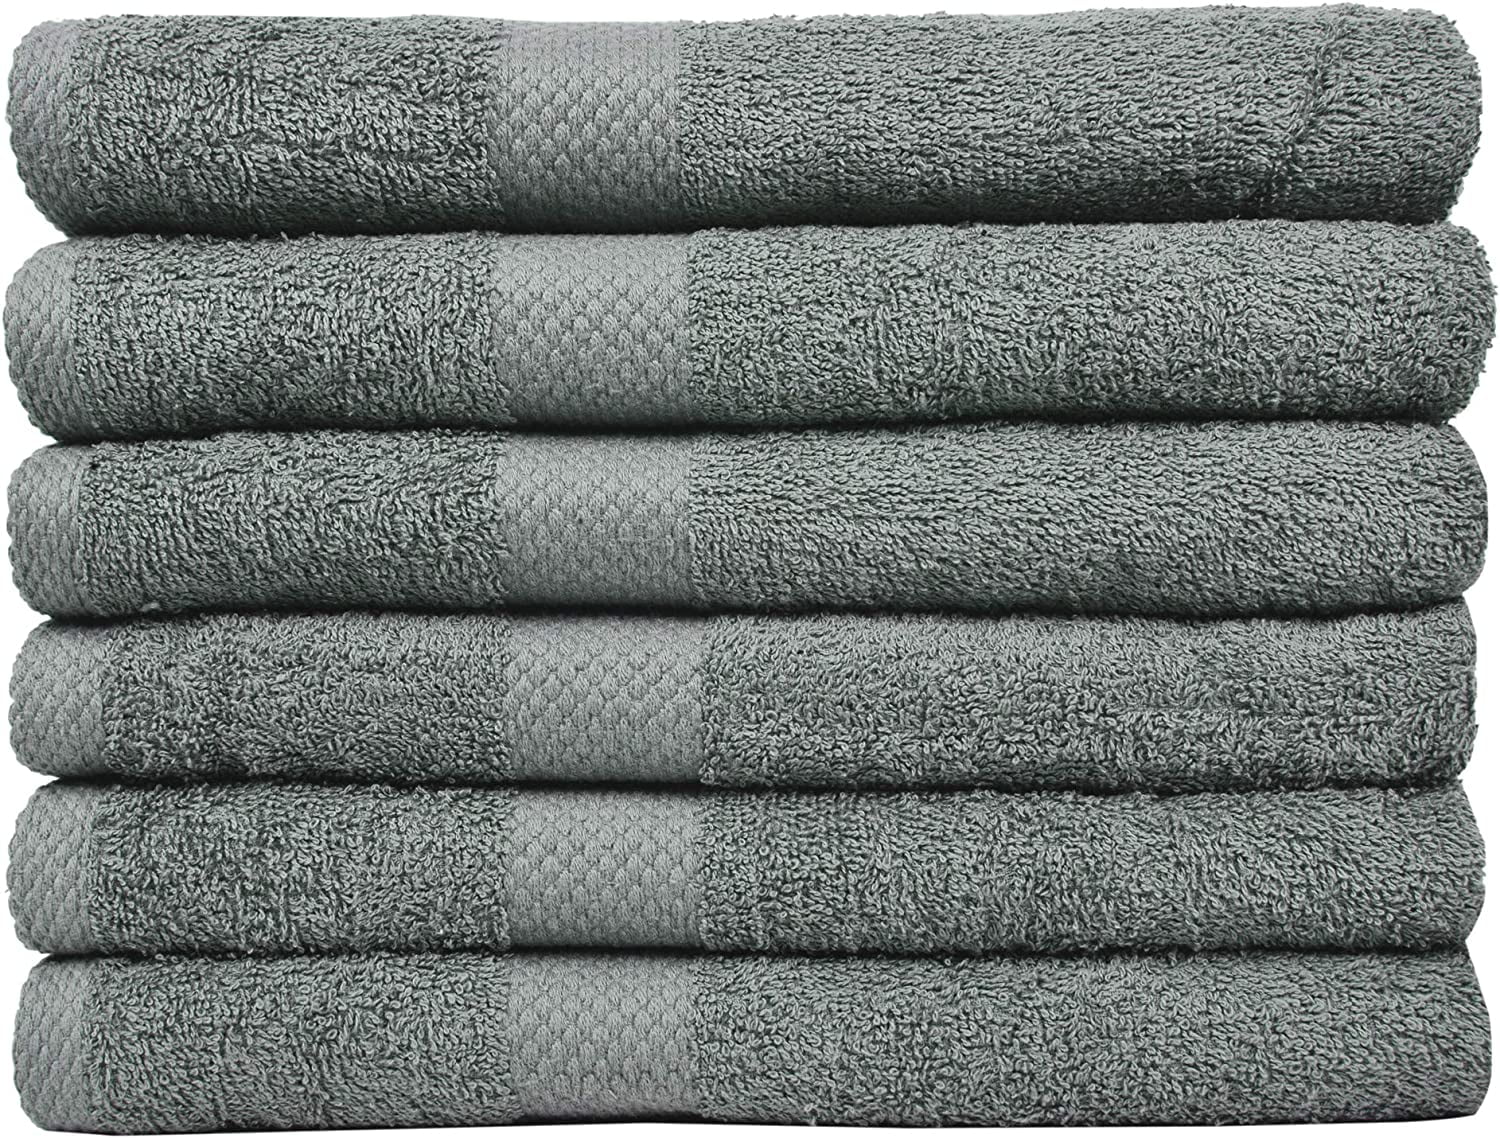 https://i5.walmartimages.com/seo/Linteum-Textile-12-Piece-Towel-Set-20x40-Inch-100-Cotton-Premium-Quality-Hair-Towels-Salon-Spa-Pool-Gym-Towels-16s-Ring-Spun-Quick-Dry-Fresh-Fluffy-A_c2deb915-33ee-47e6-b5a2-ddf774f3d12d.a17c487da04d57f724411d447f87fd1a.jpeg